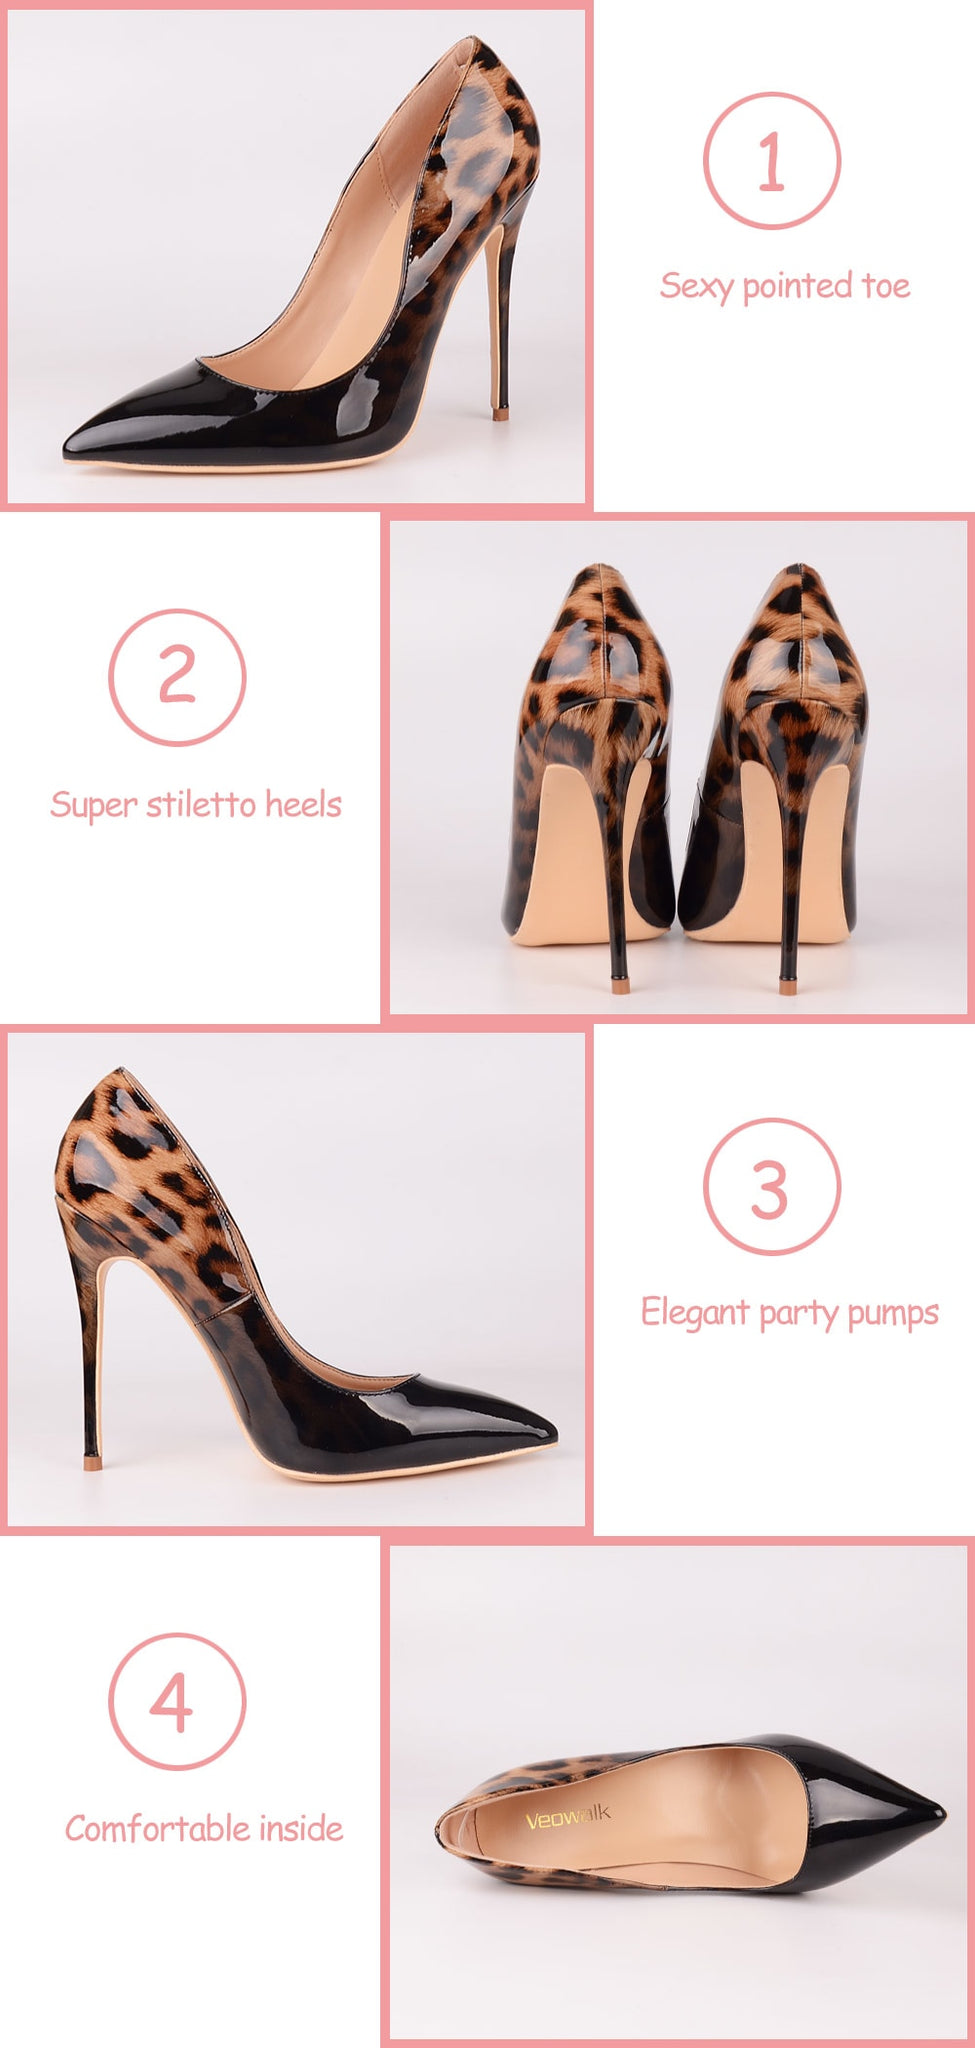 Leopard Patent Leather PumpsPumps Shoes59.98 USD-Sherilyn Shop White Leopard 12cm / 6.5